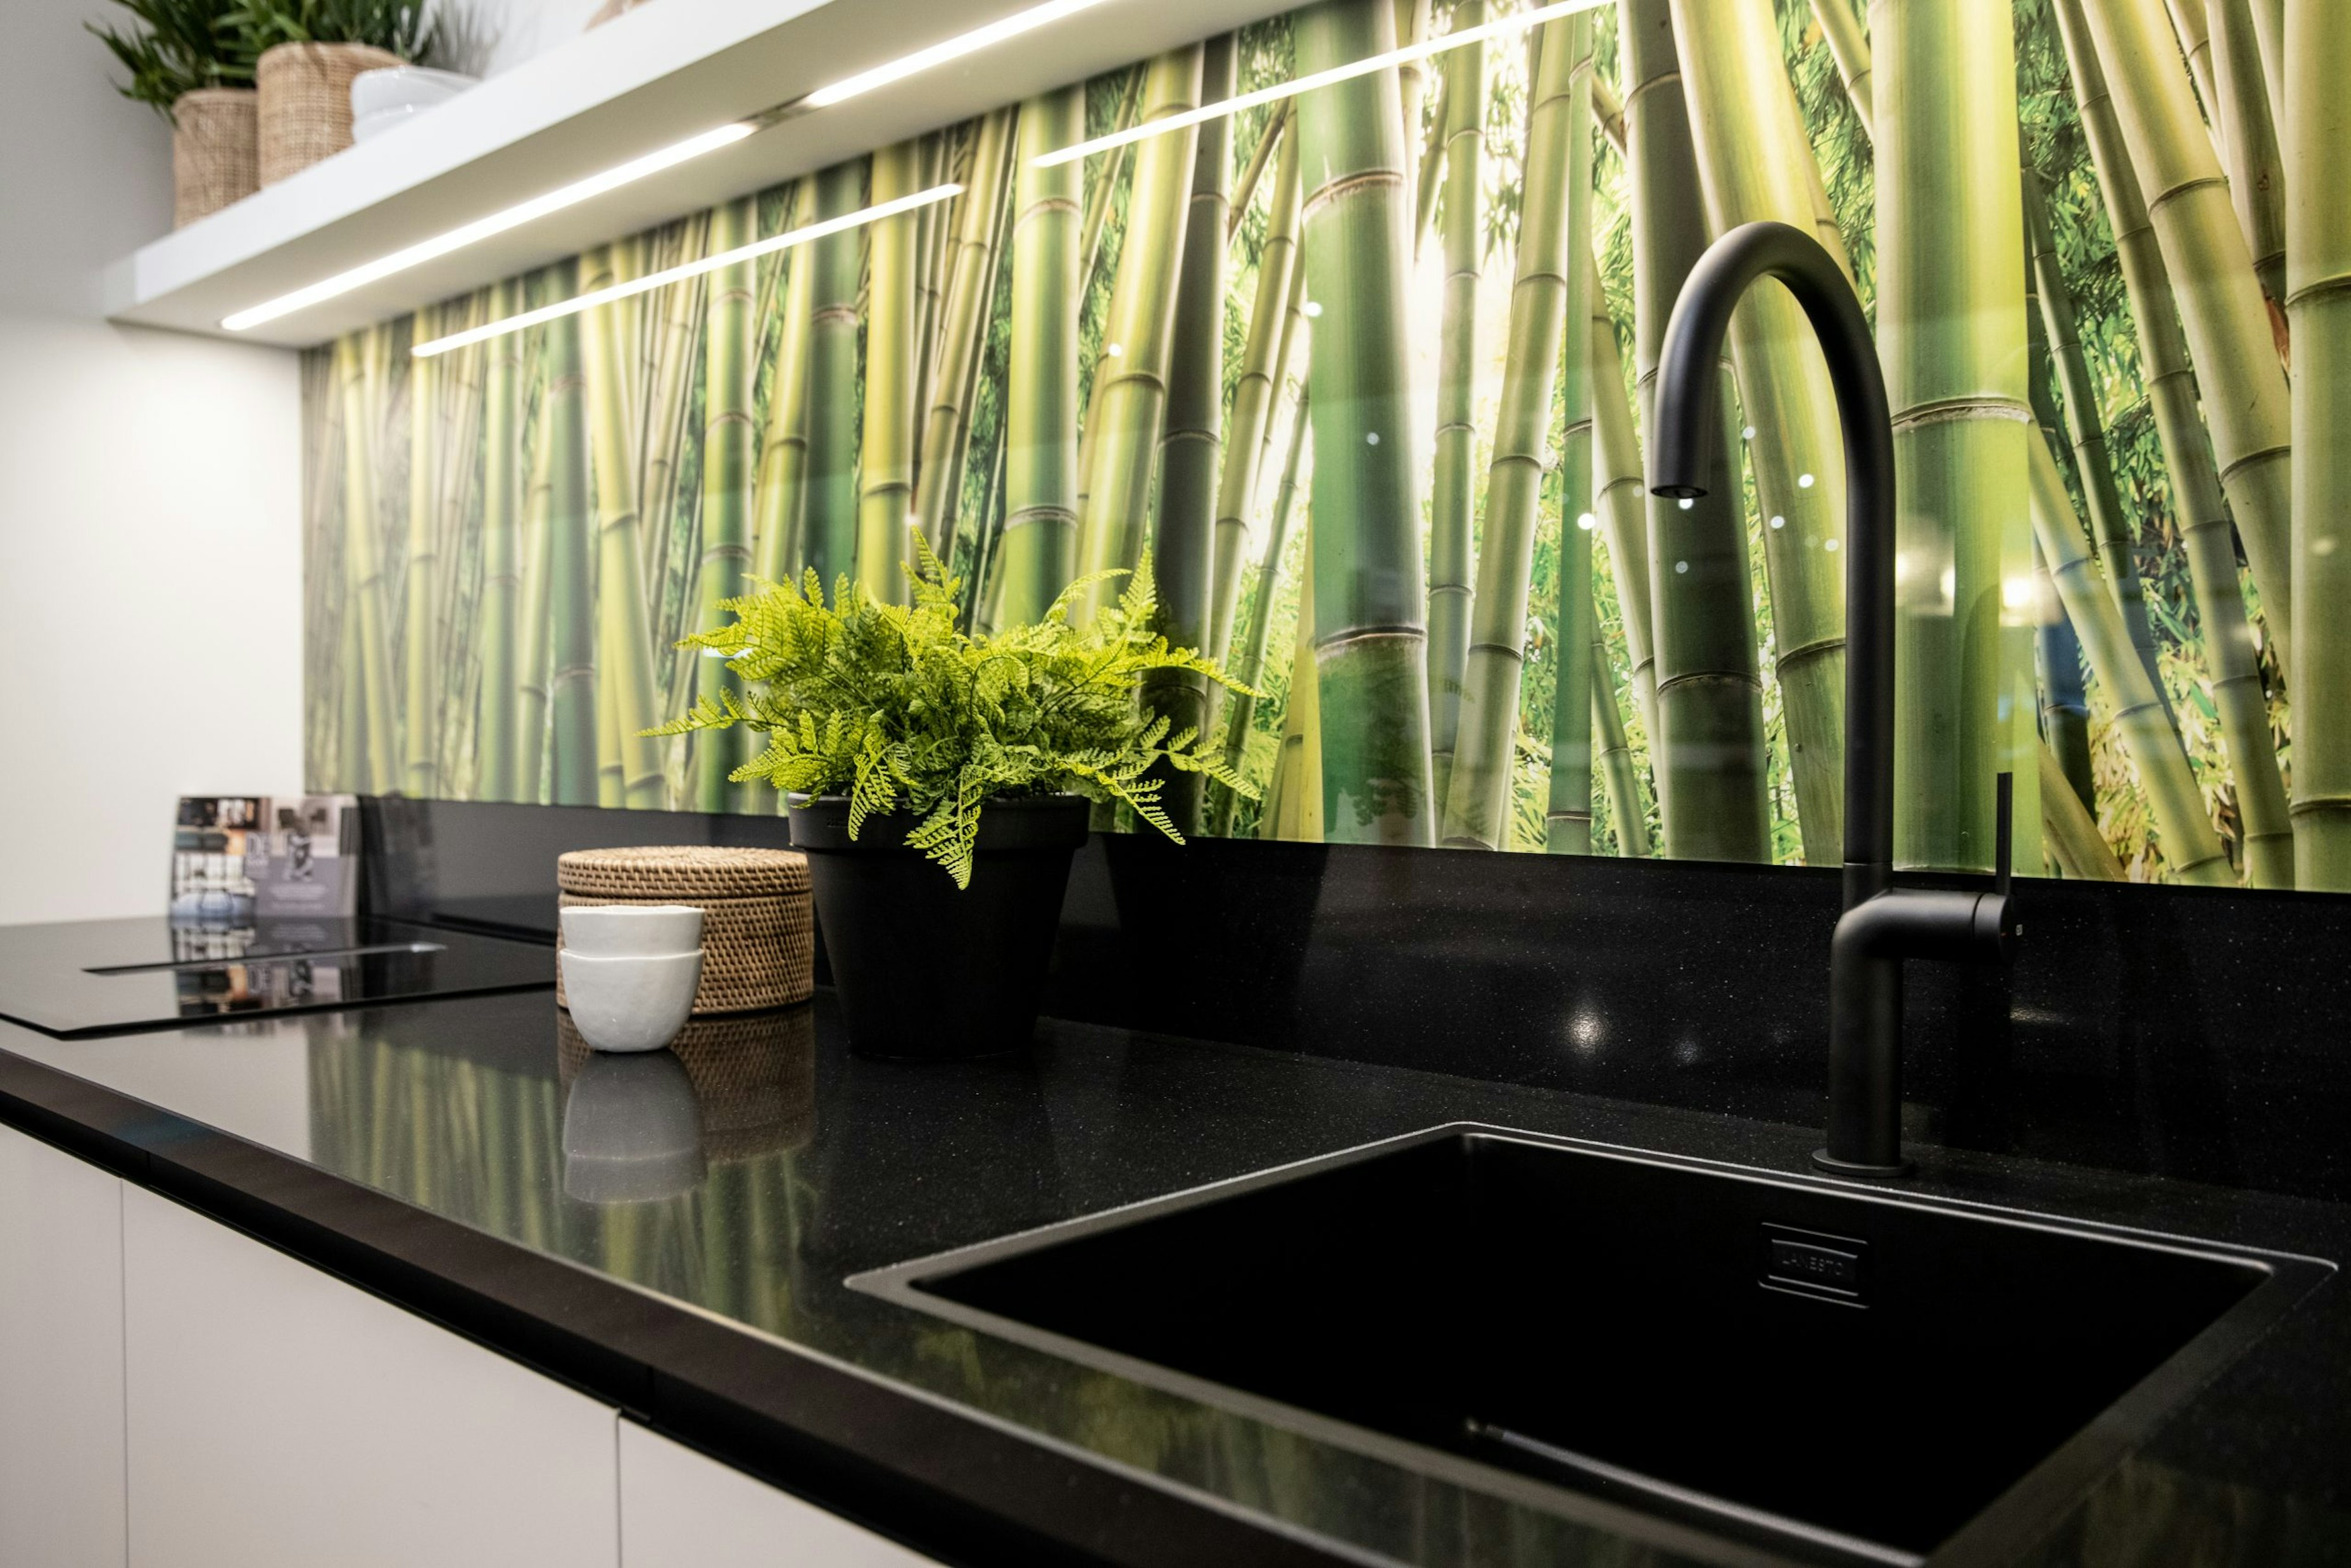 De achterwand van deze keuken heeft een frisse bamboe print. - Bemmel & Kroon keukens